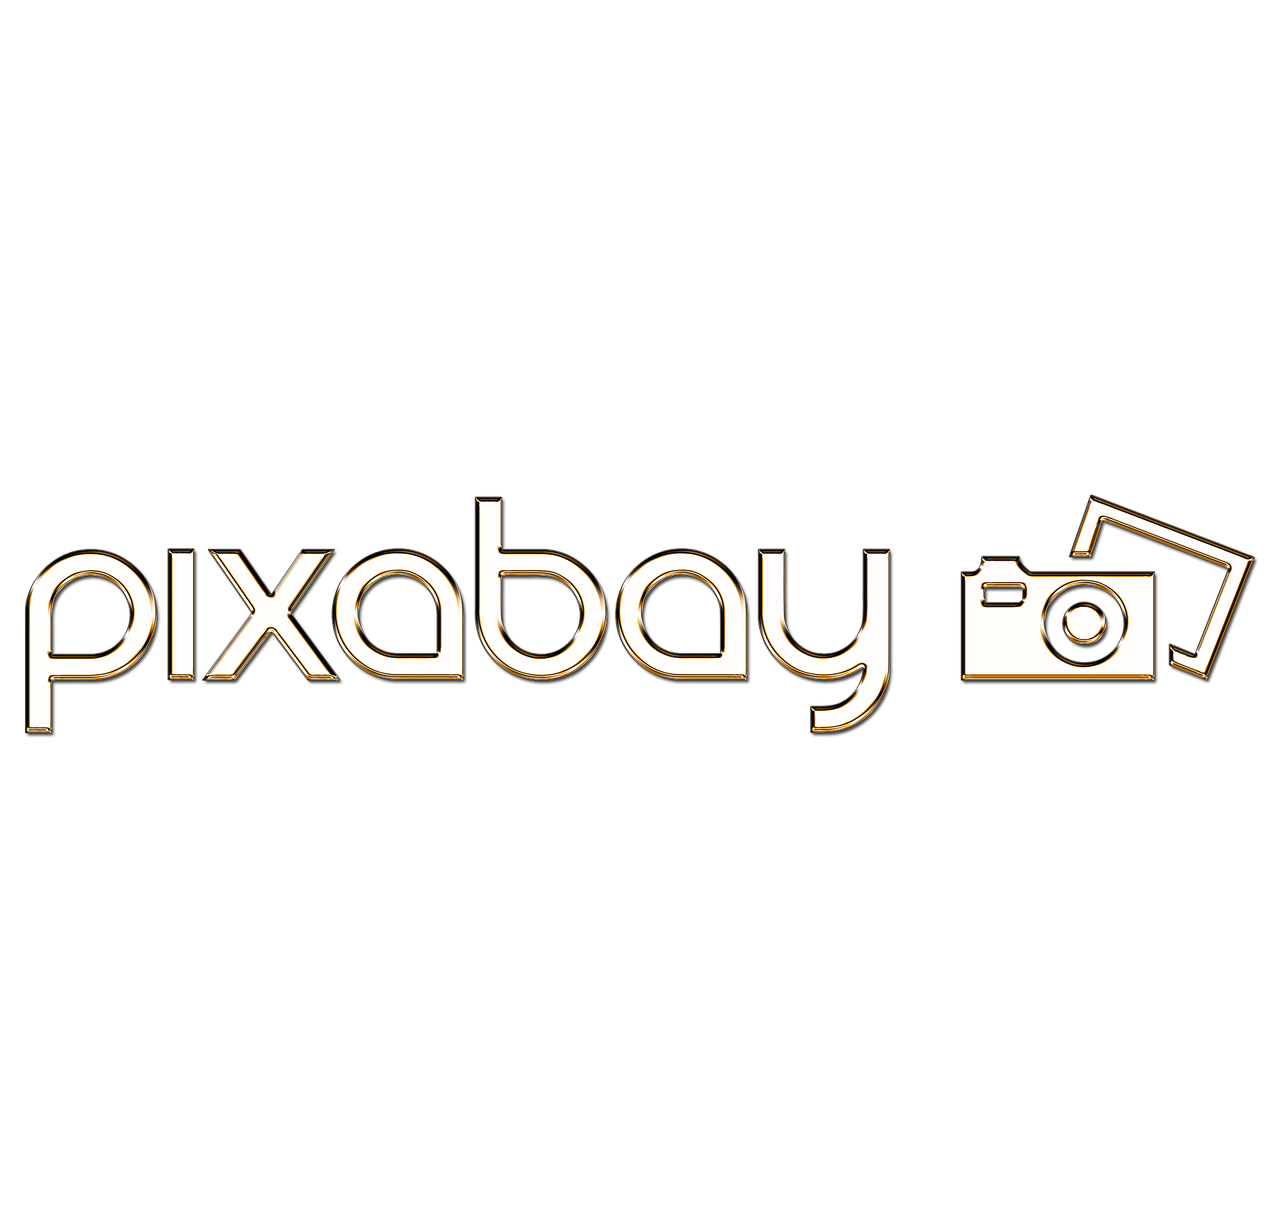 pixabay logo font free photo